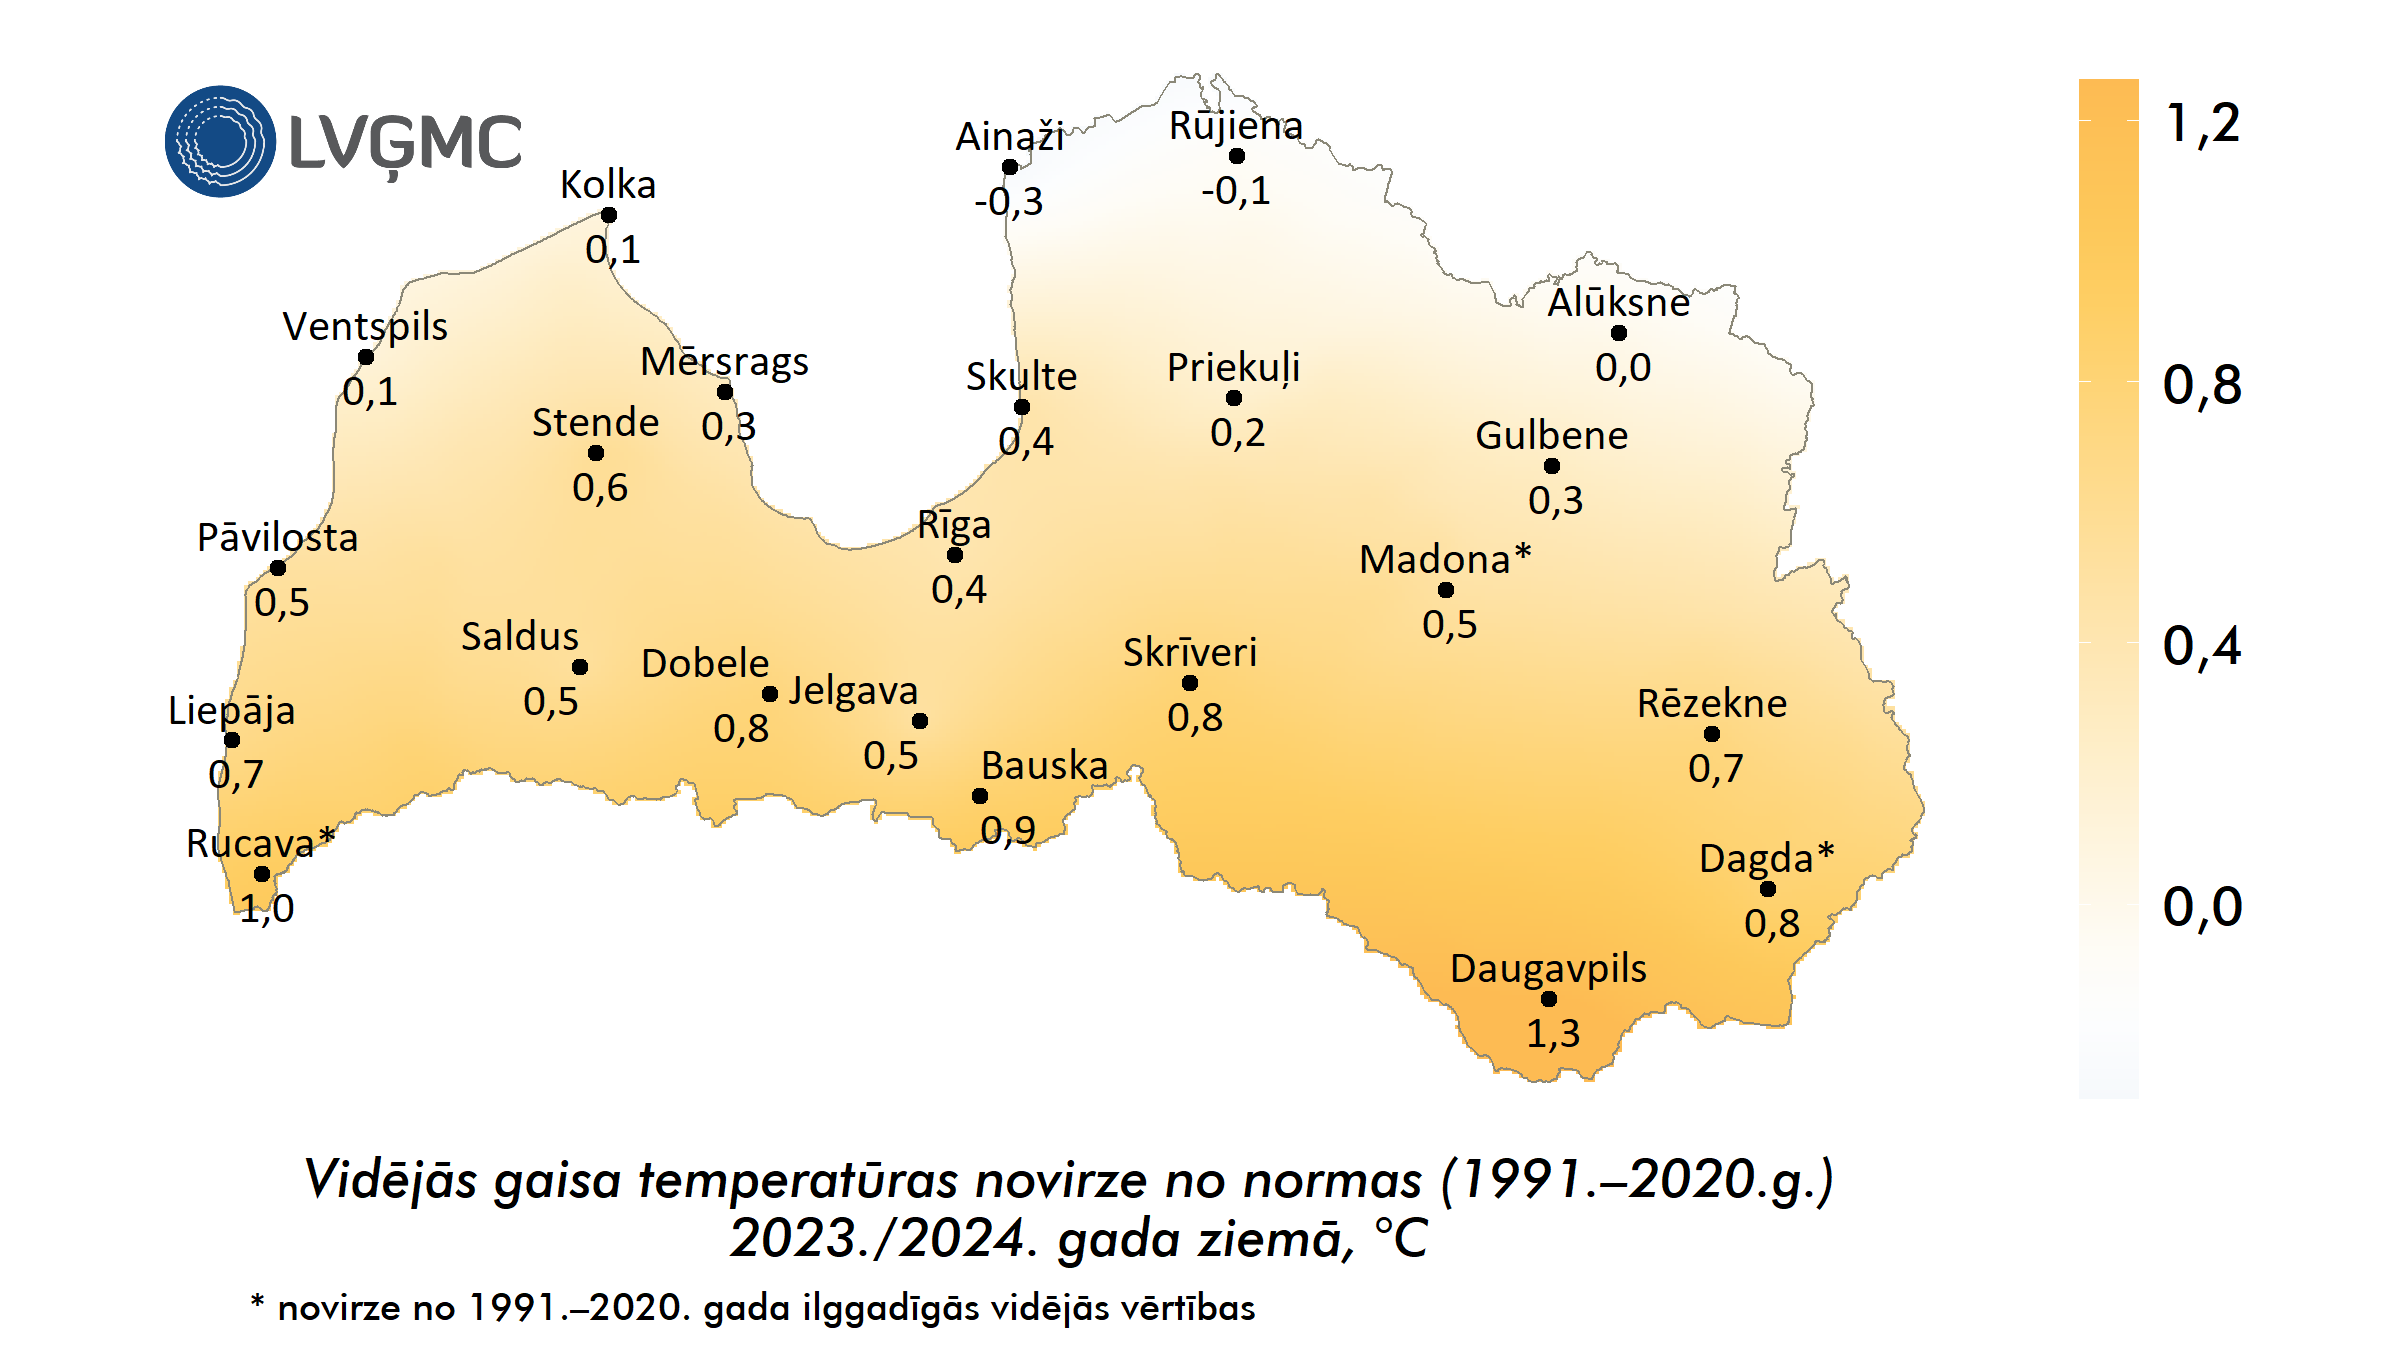 Vidējās gaisa temperatūras novirze no normas 2023./2024. gada ziemā, °C